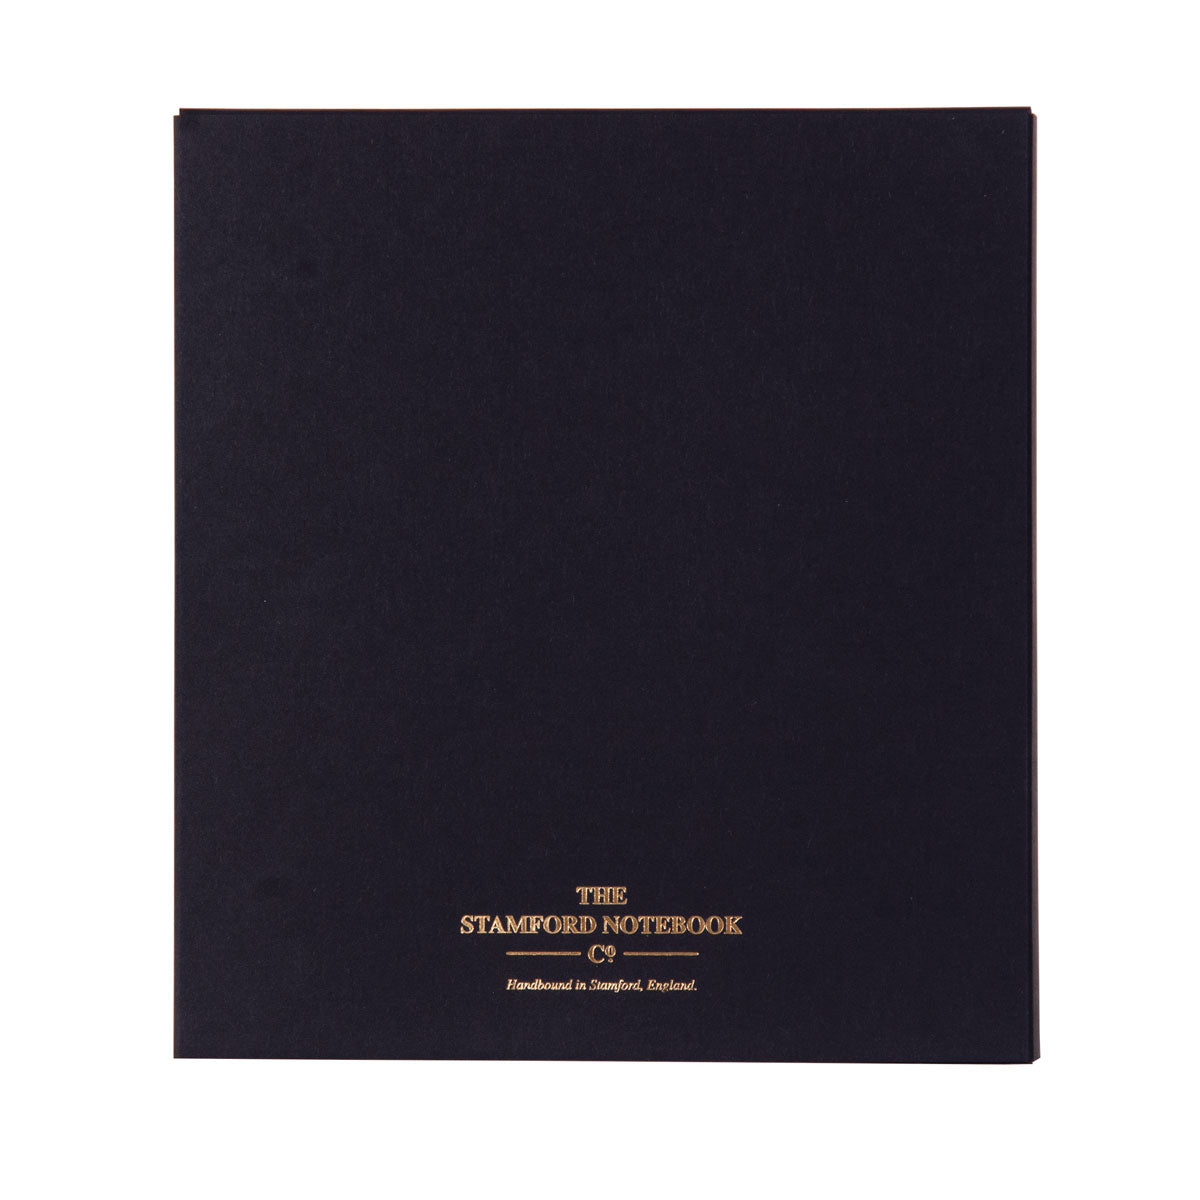 The Aurum Luxury Gold Embossed black packaging